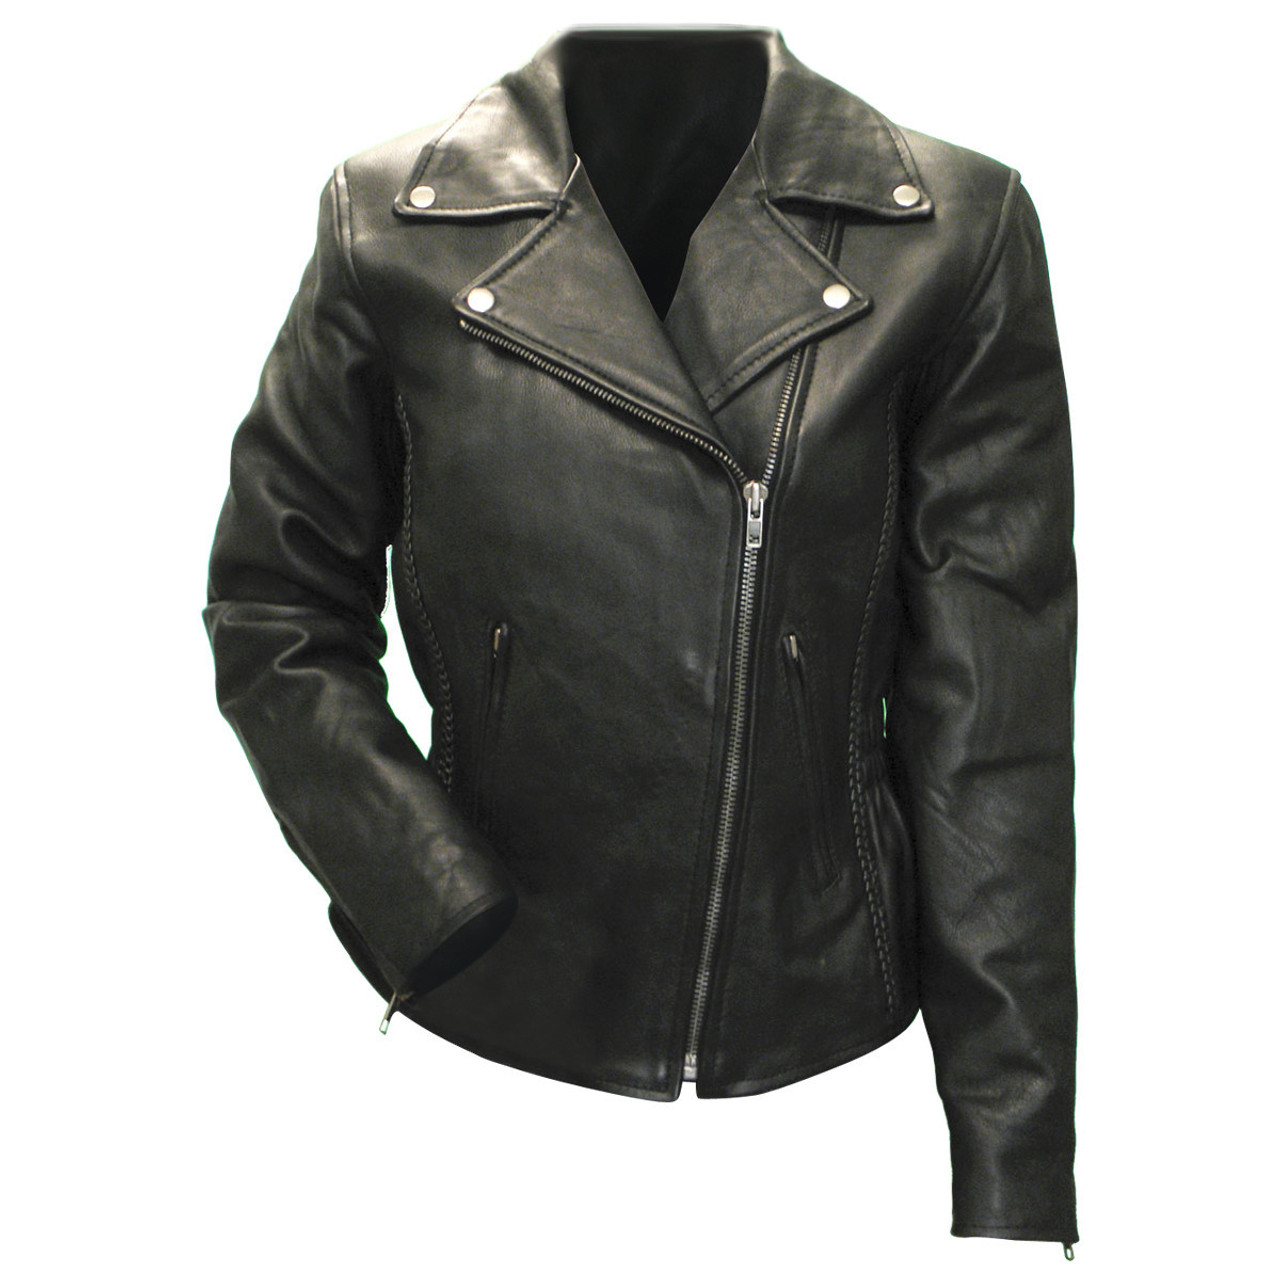 Jafrum Premium Cowhide Braid and Stud Motorcycle Leather Jacket - Team ...